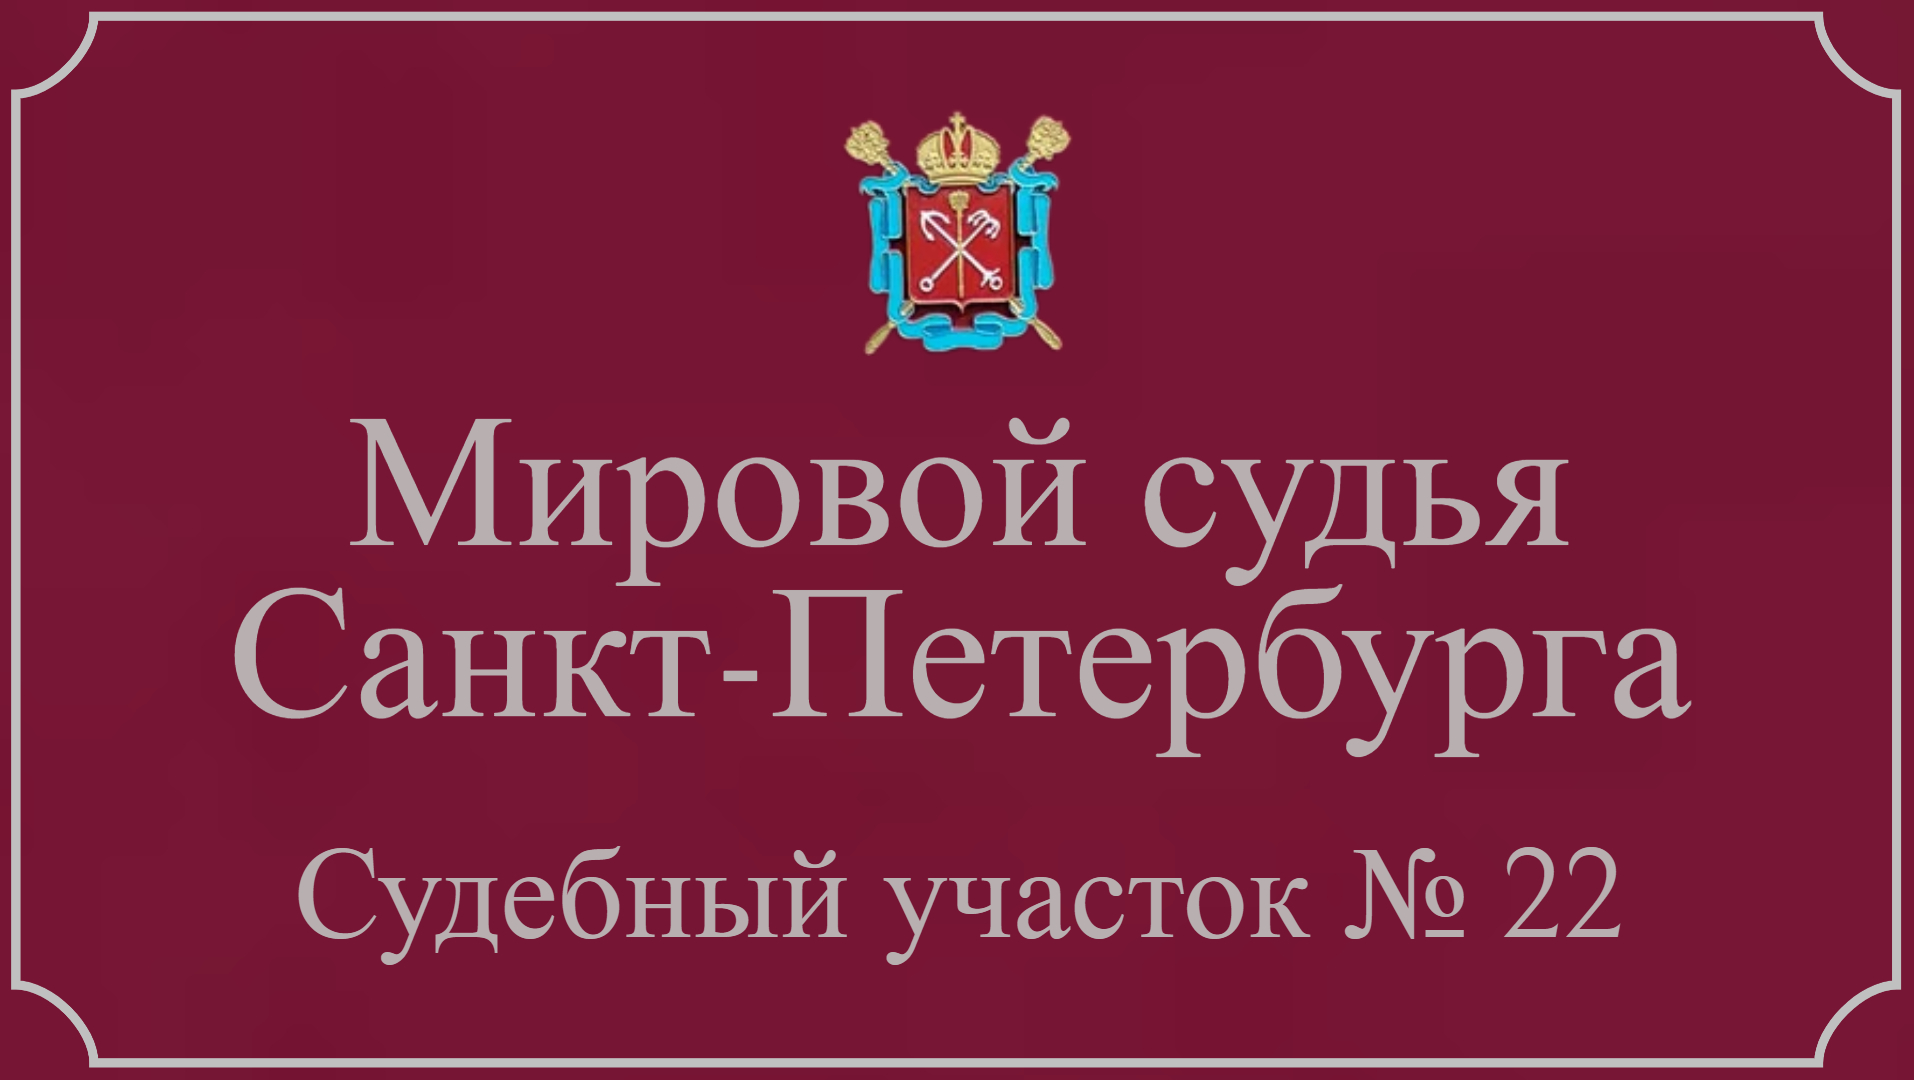 Информация по 22 судебному участку в Санкт-Петербурге.